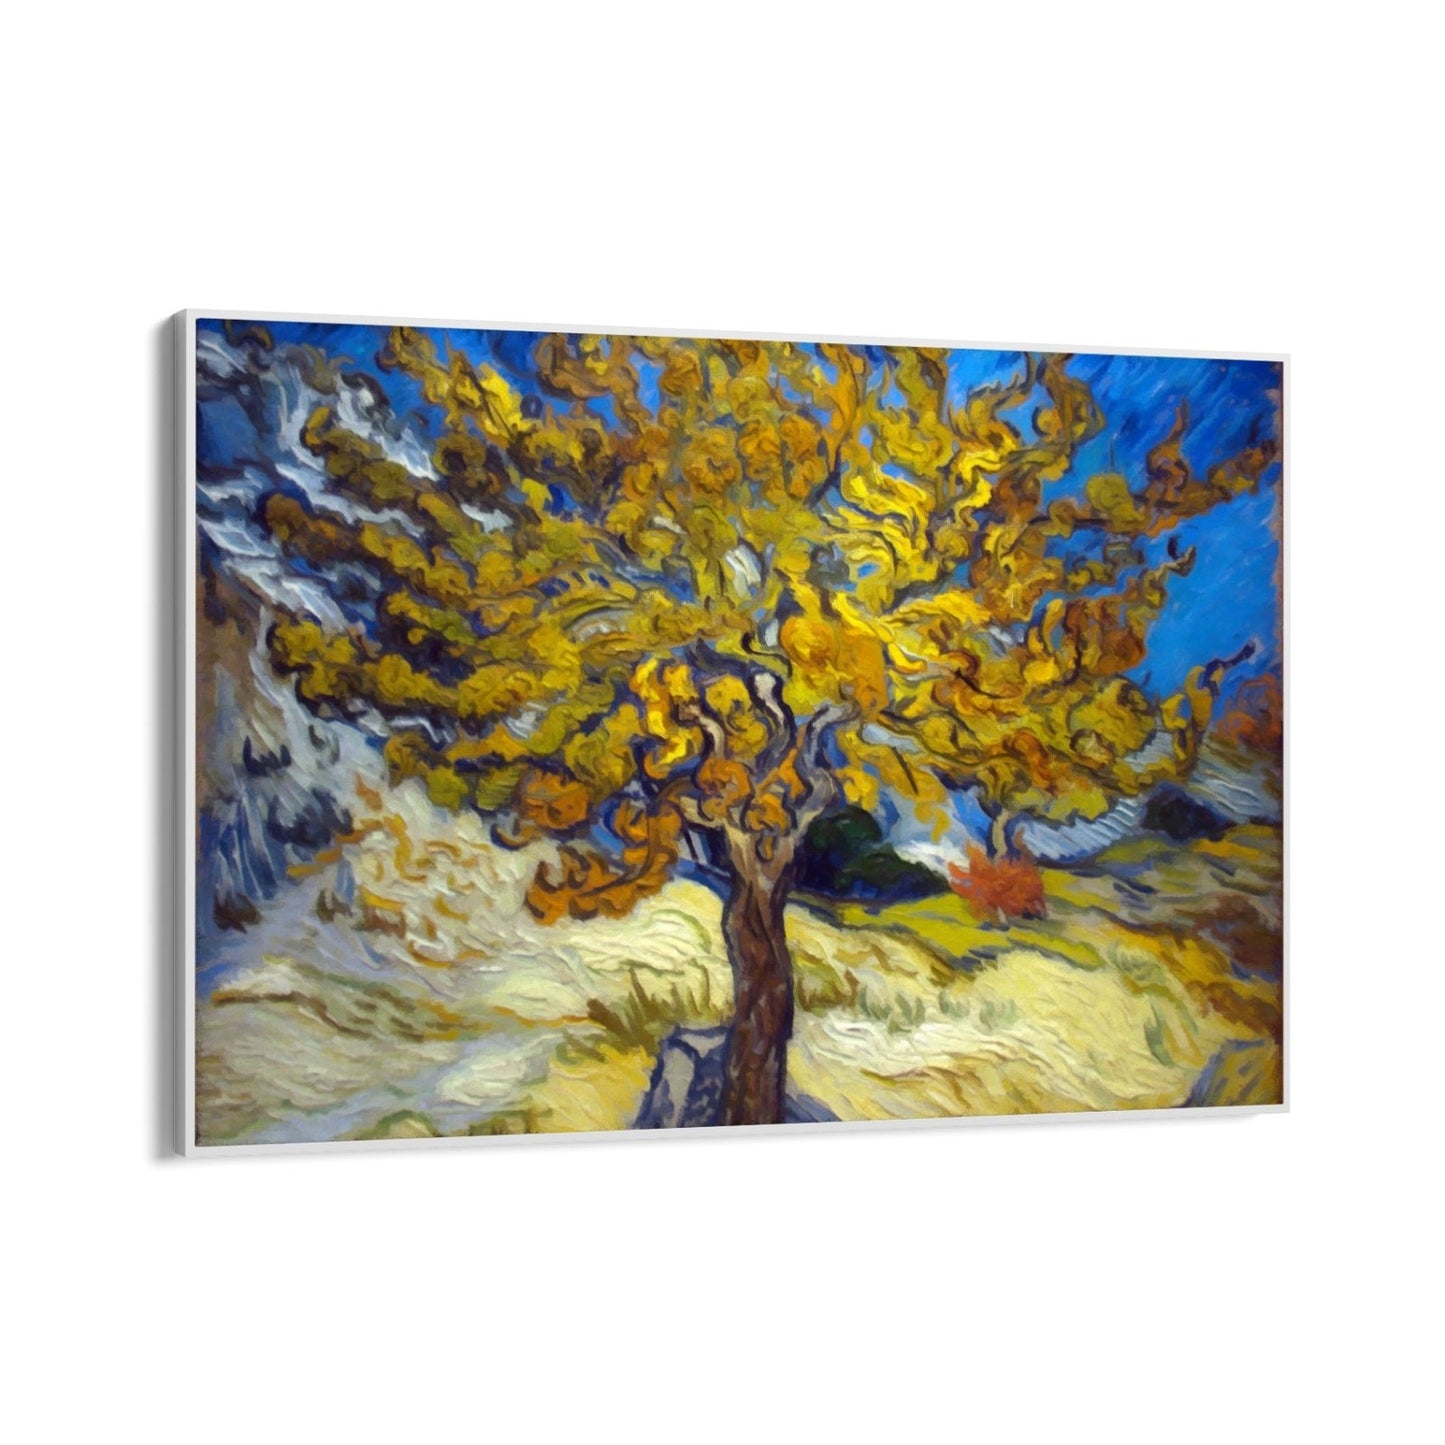 De moerbeiboom, Vincent van Gogh